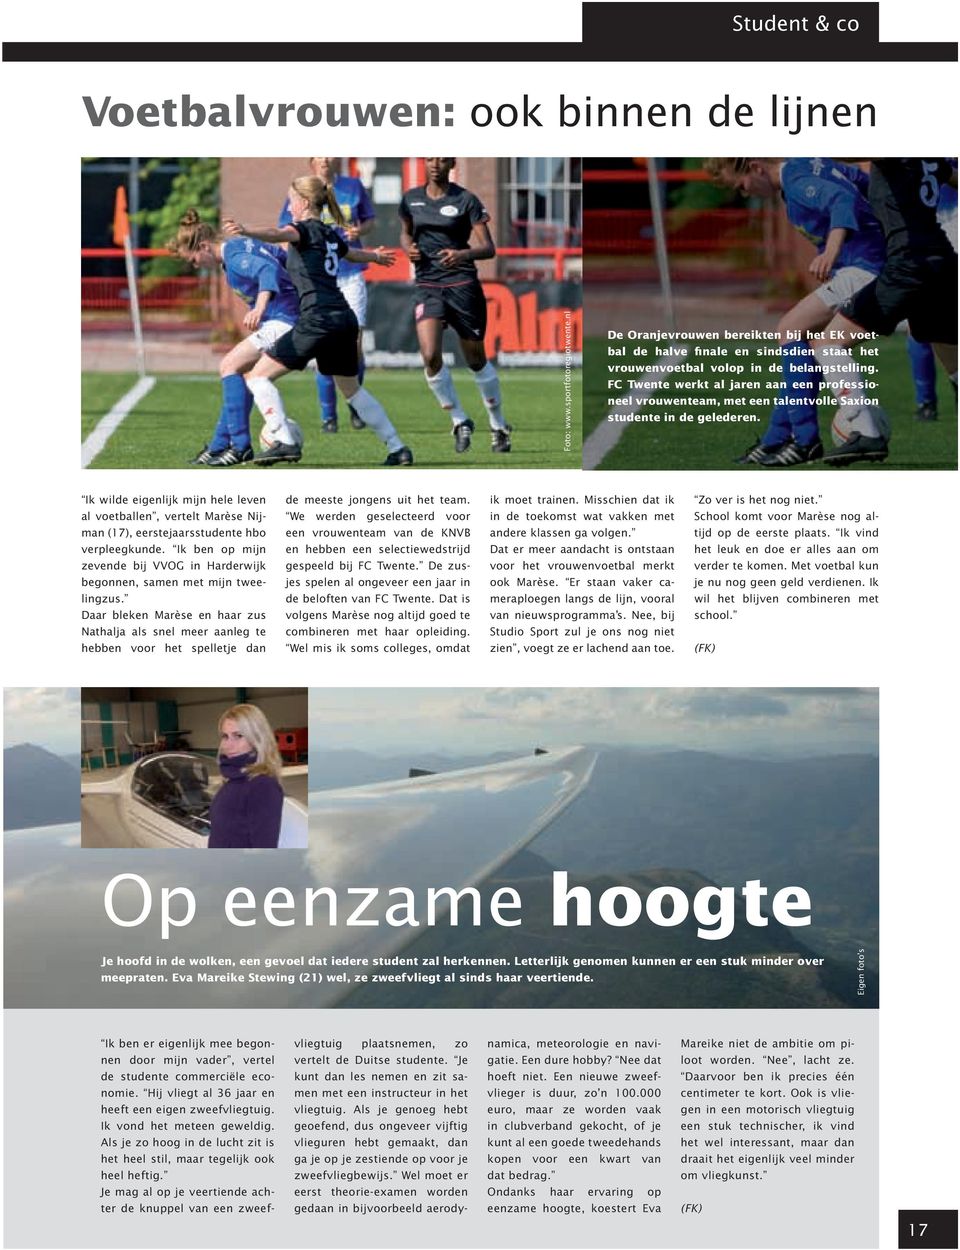 FC Twente werkt al jaren aan een professioneel vrouwenteam, met een talentvolle Saxion studente in de gelederen.